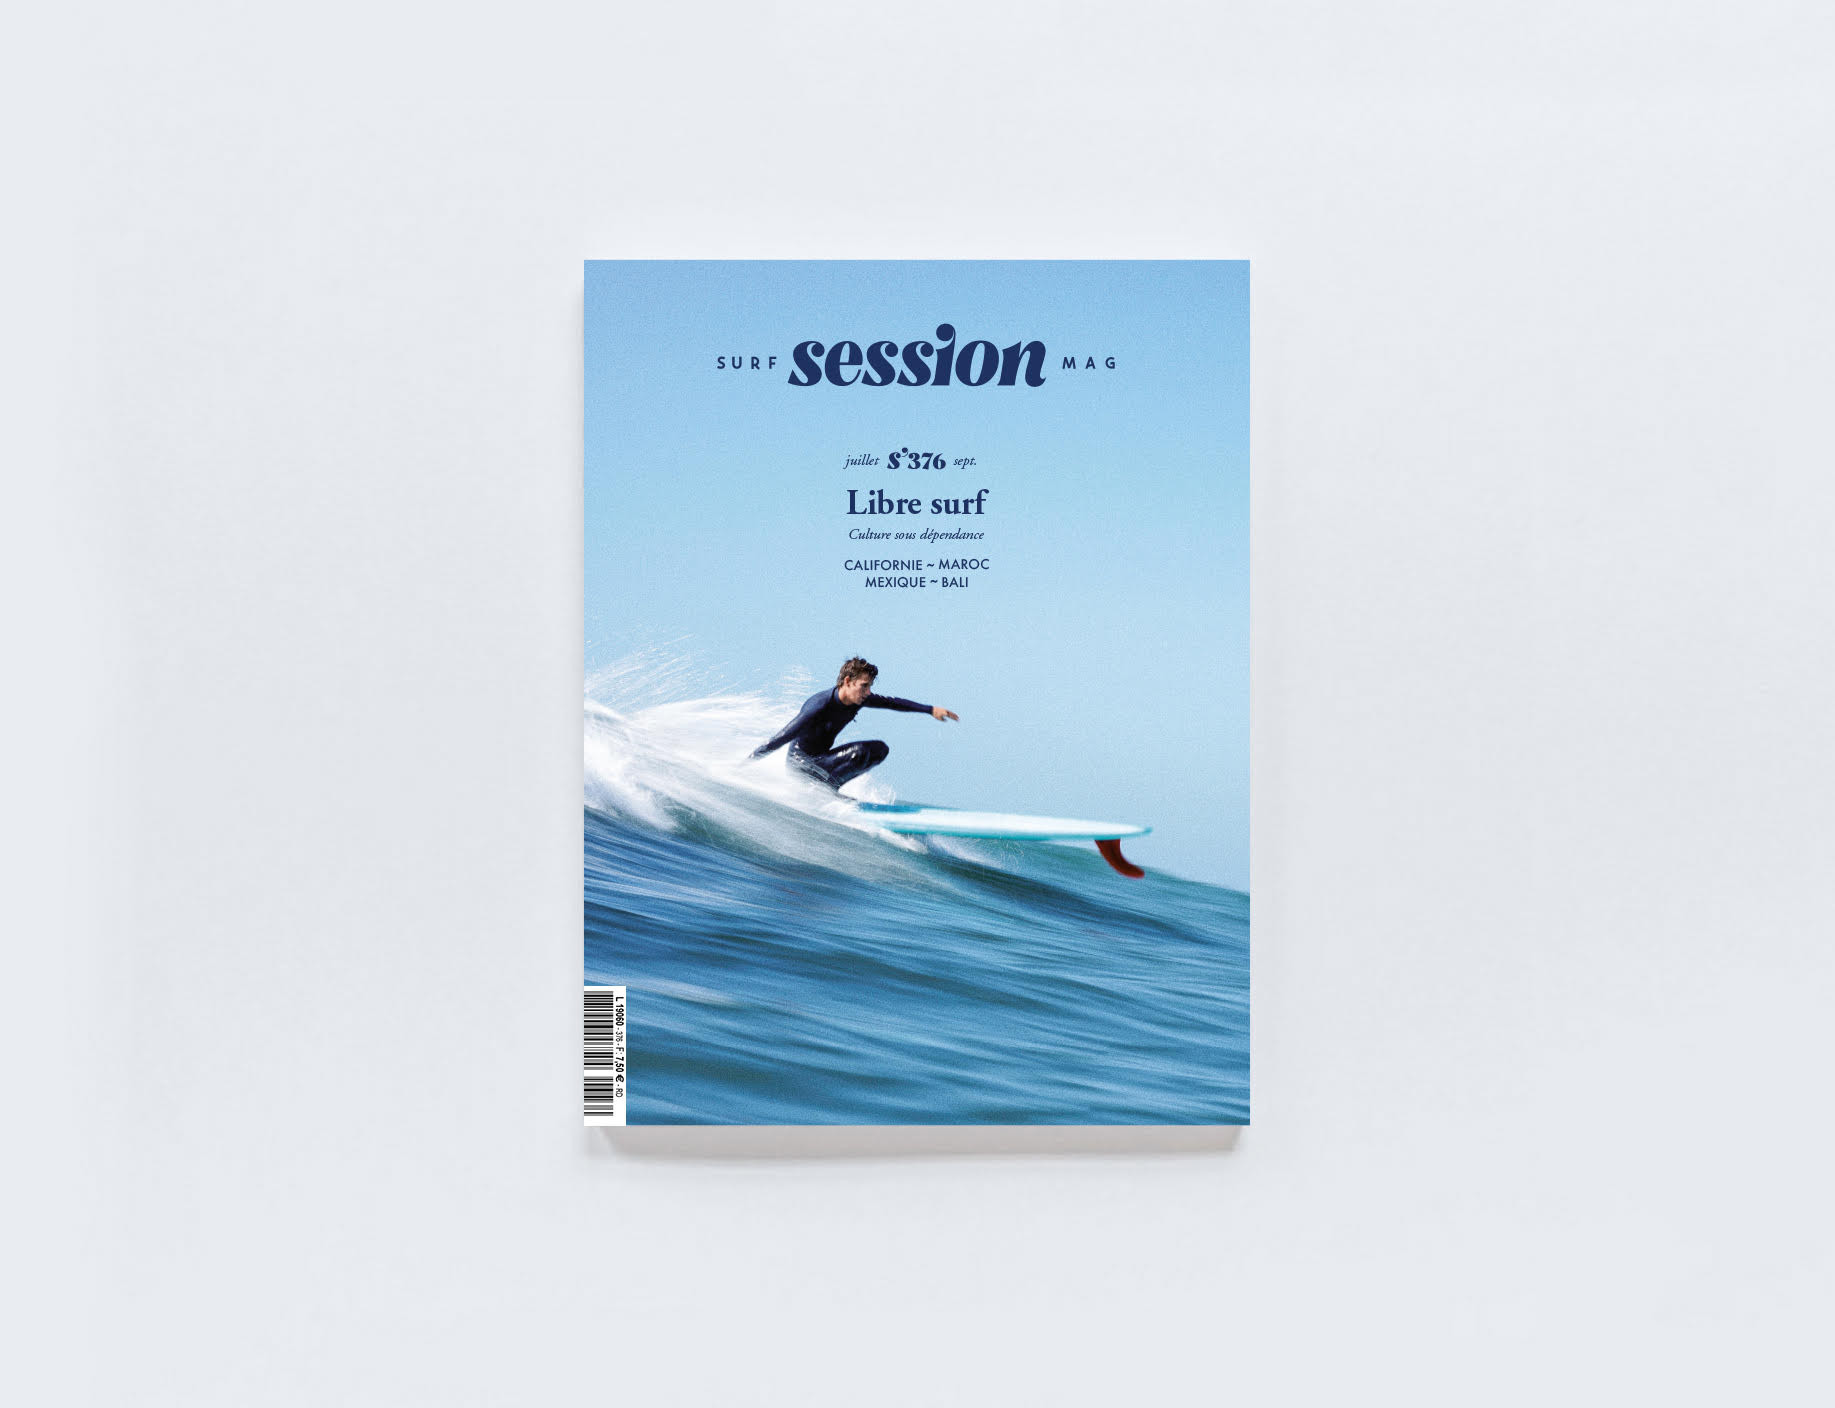 Surf Session Le Magazine De Surf Depuis 1986 Abonnements Accessoires De Surf Et Lifestyle